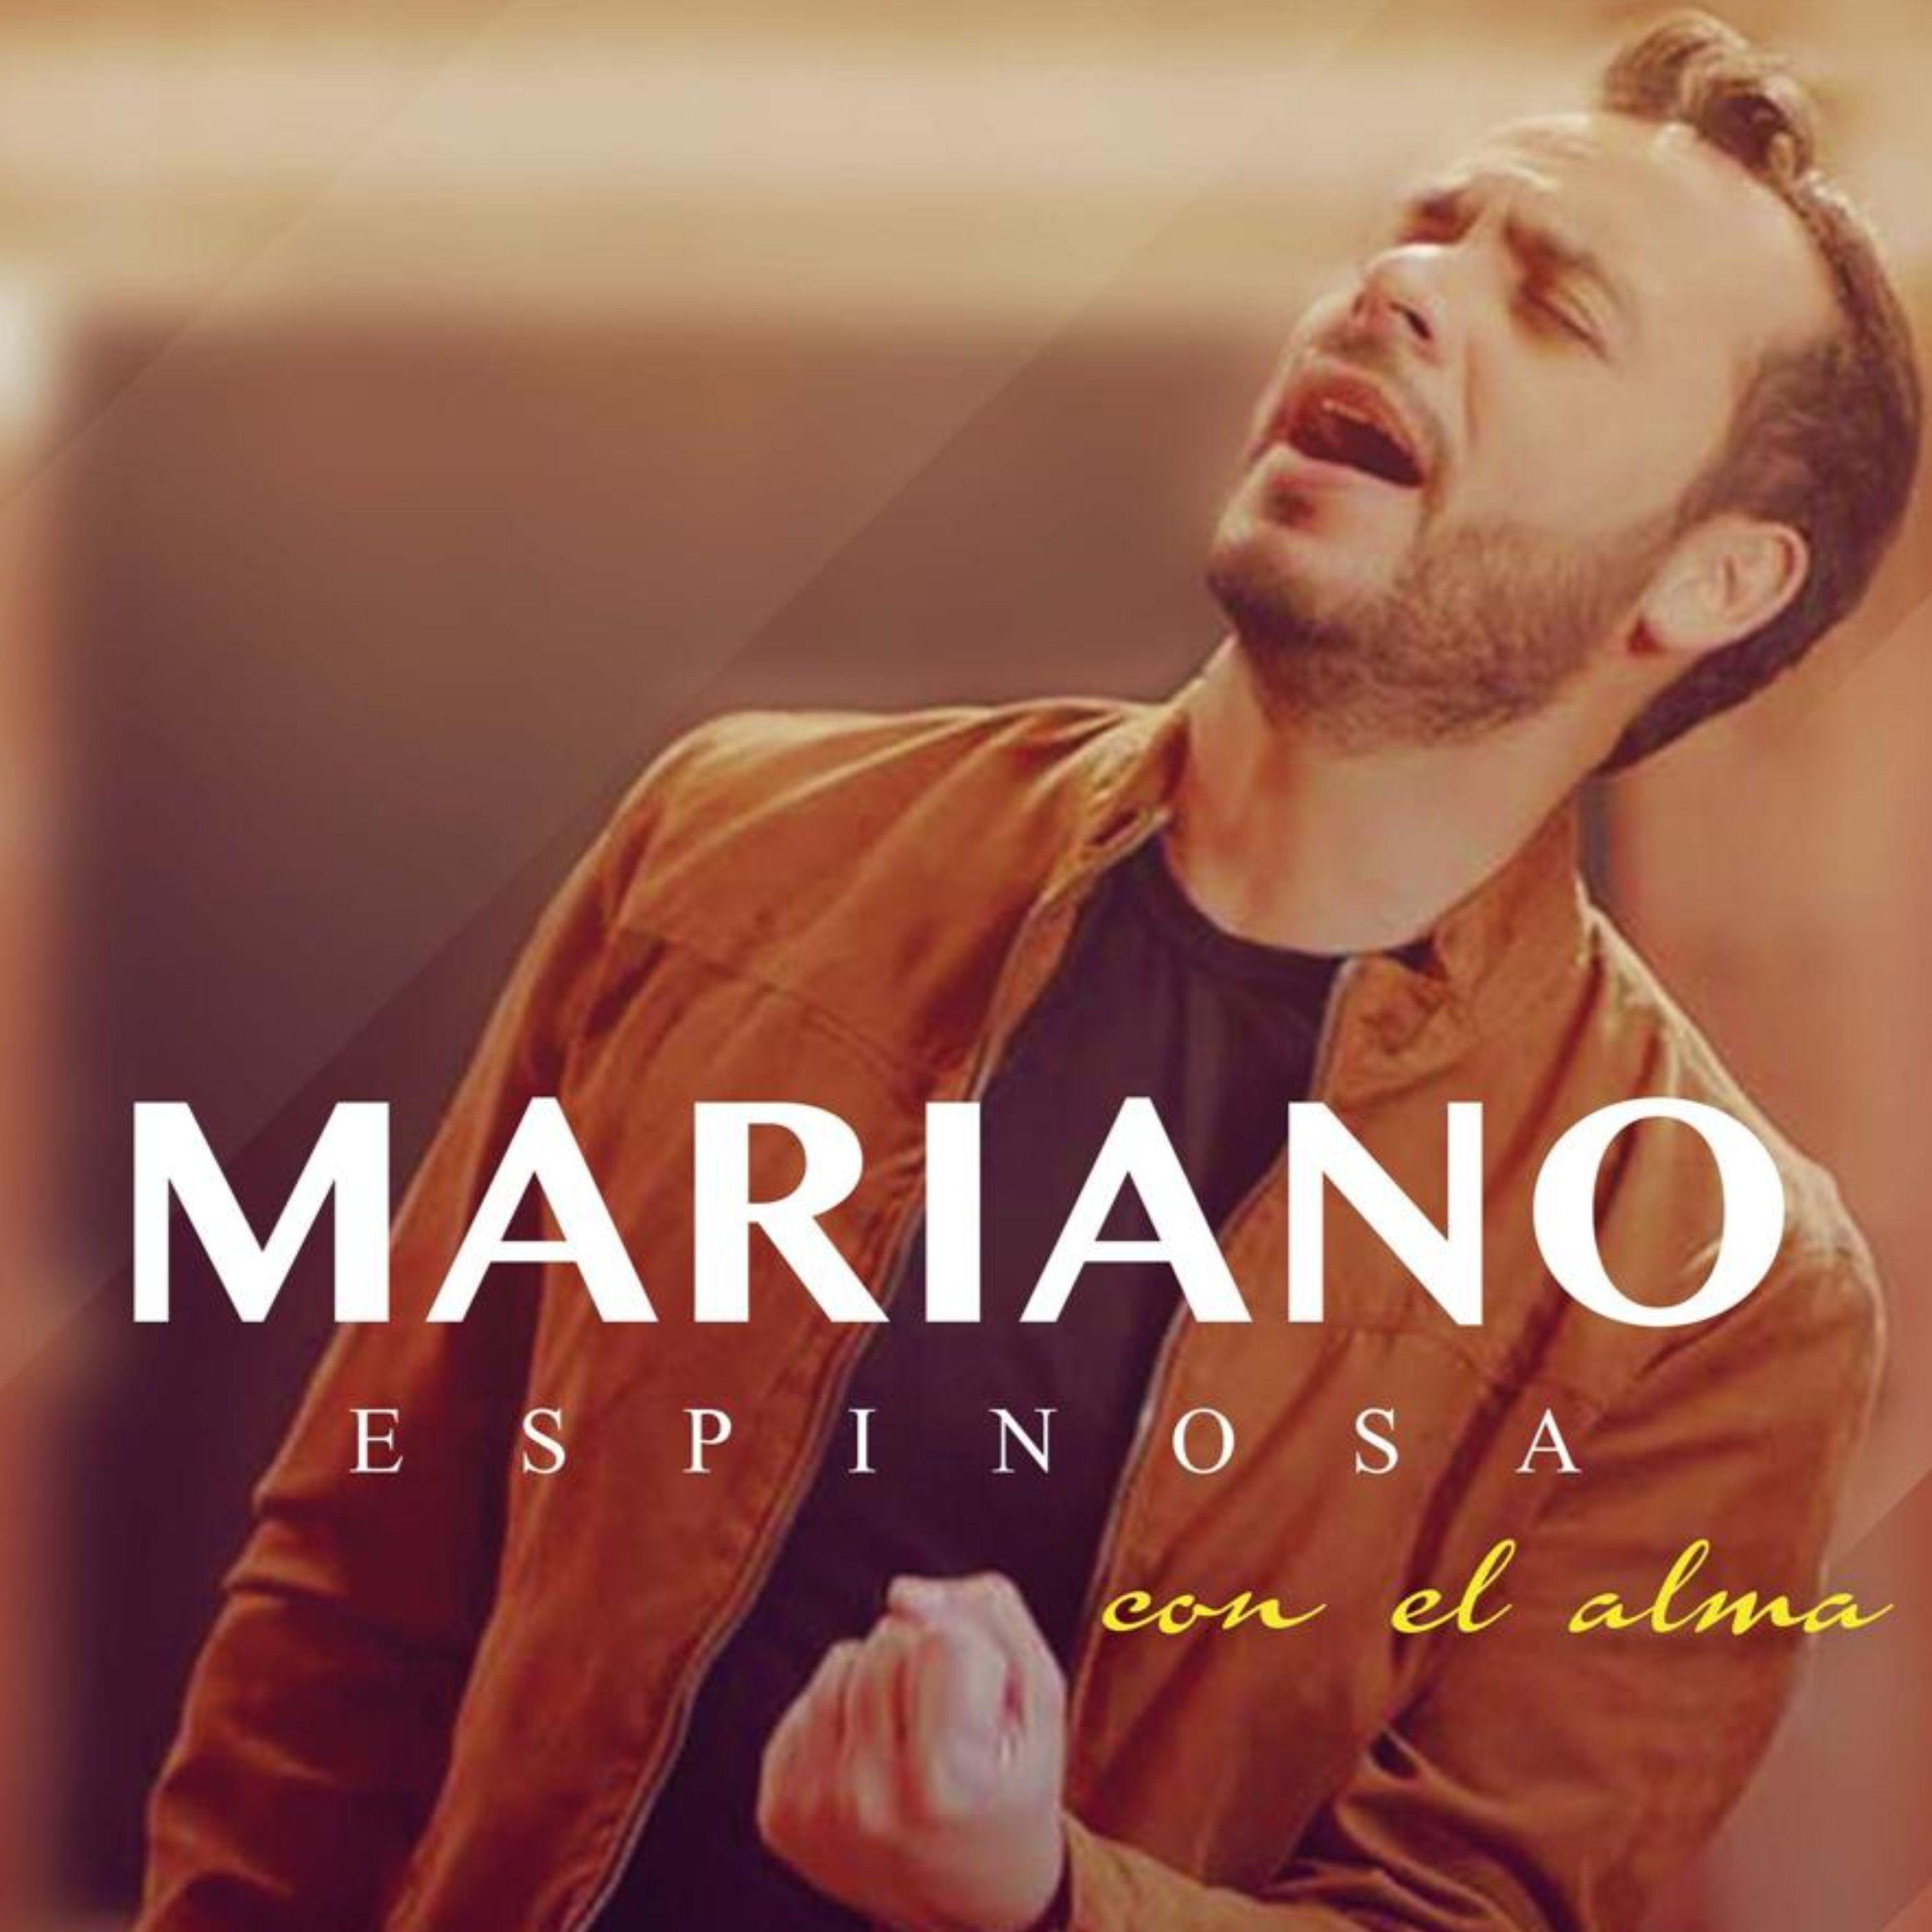 Mariano Espinosa - Miradita